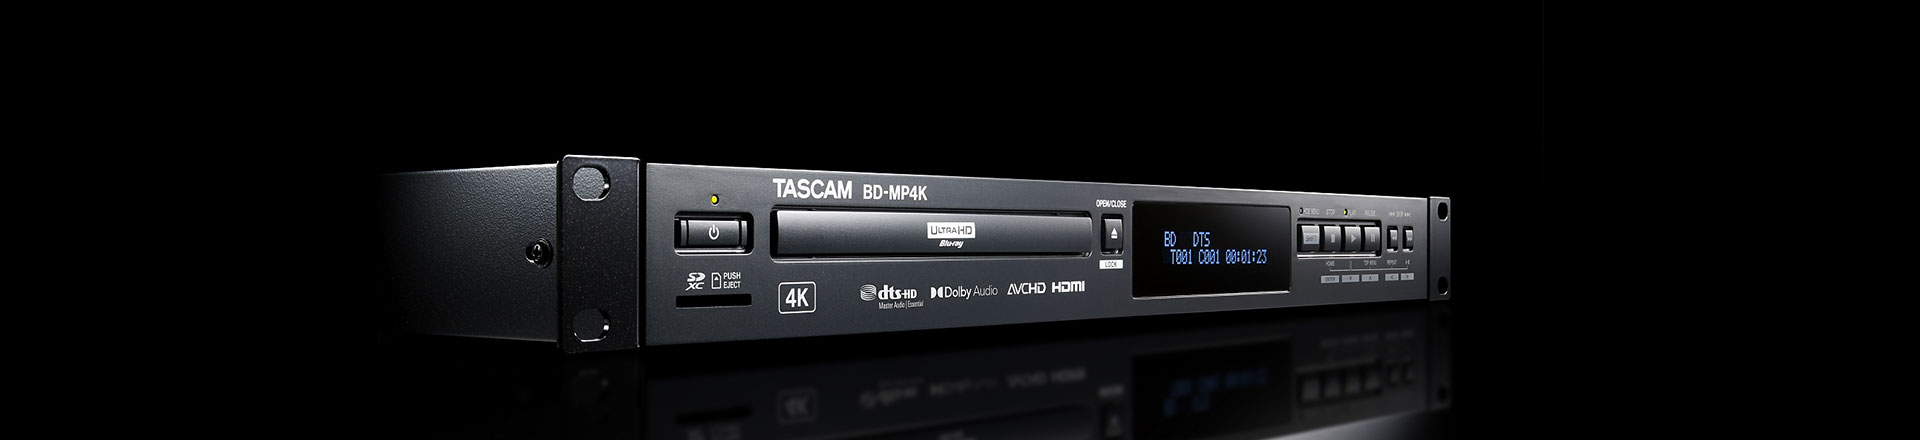 Tascam BD-MP4K - Popularne formaty audio i wideo obsługiwane jednym urządzeniem